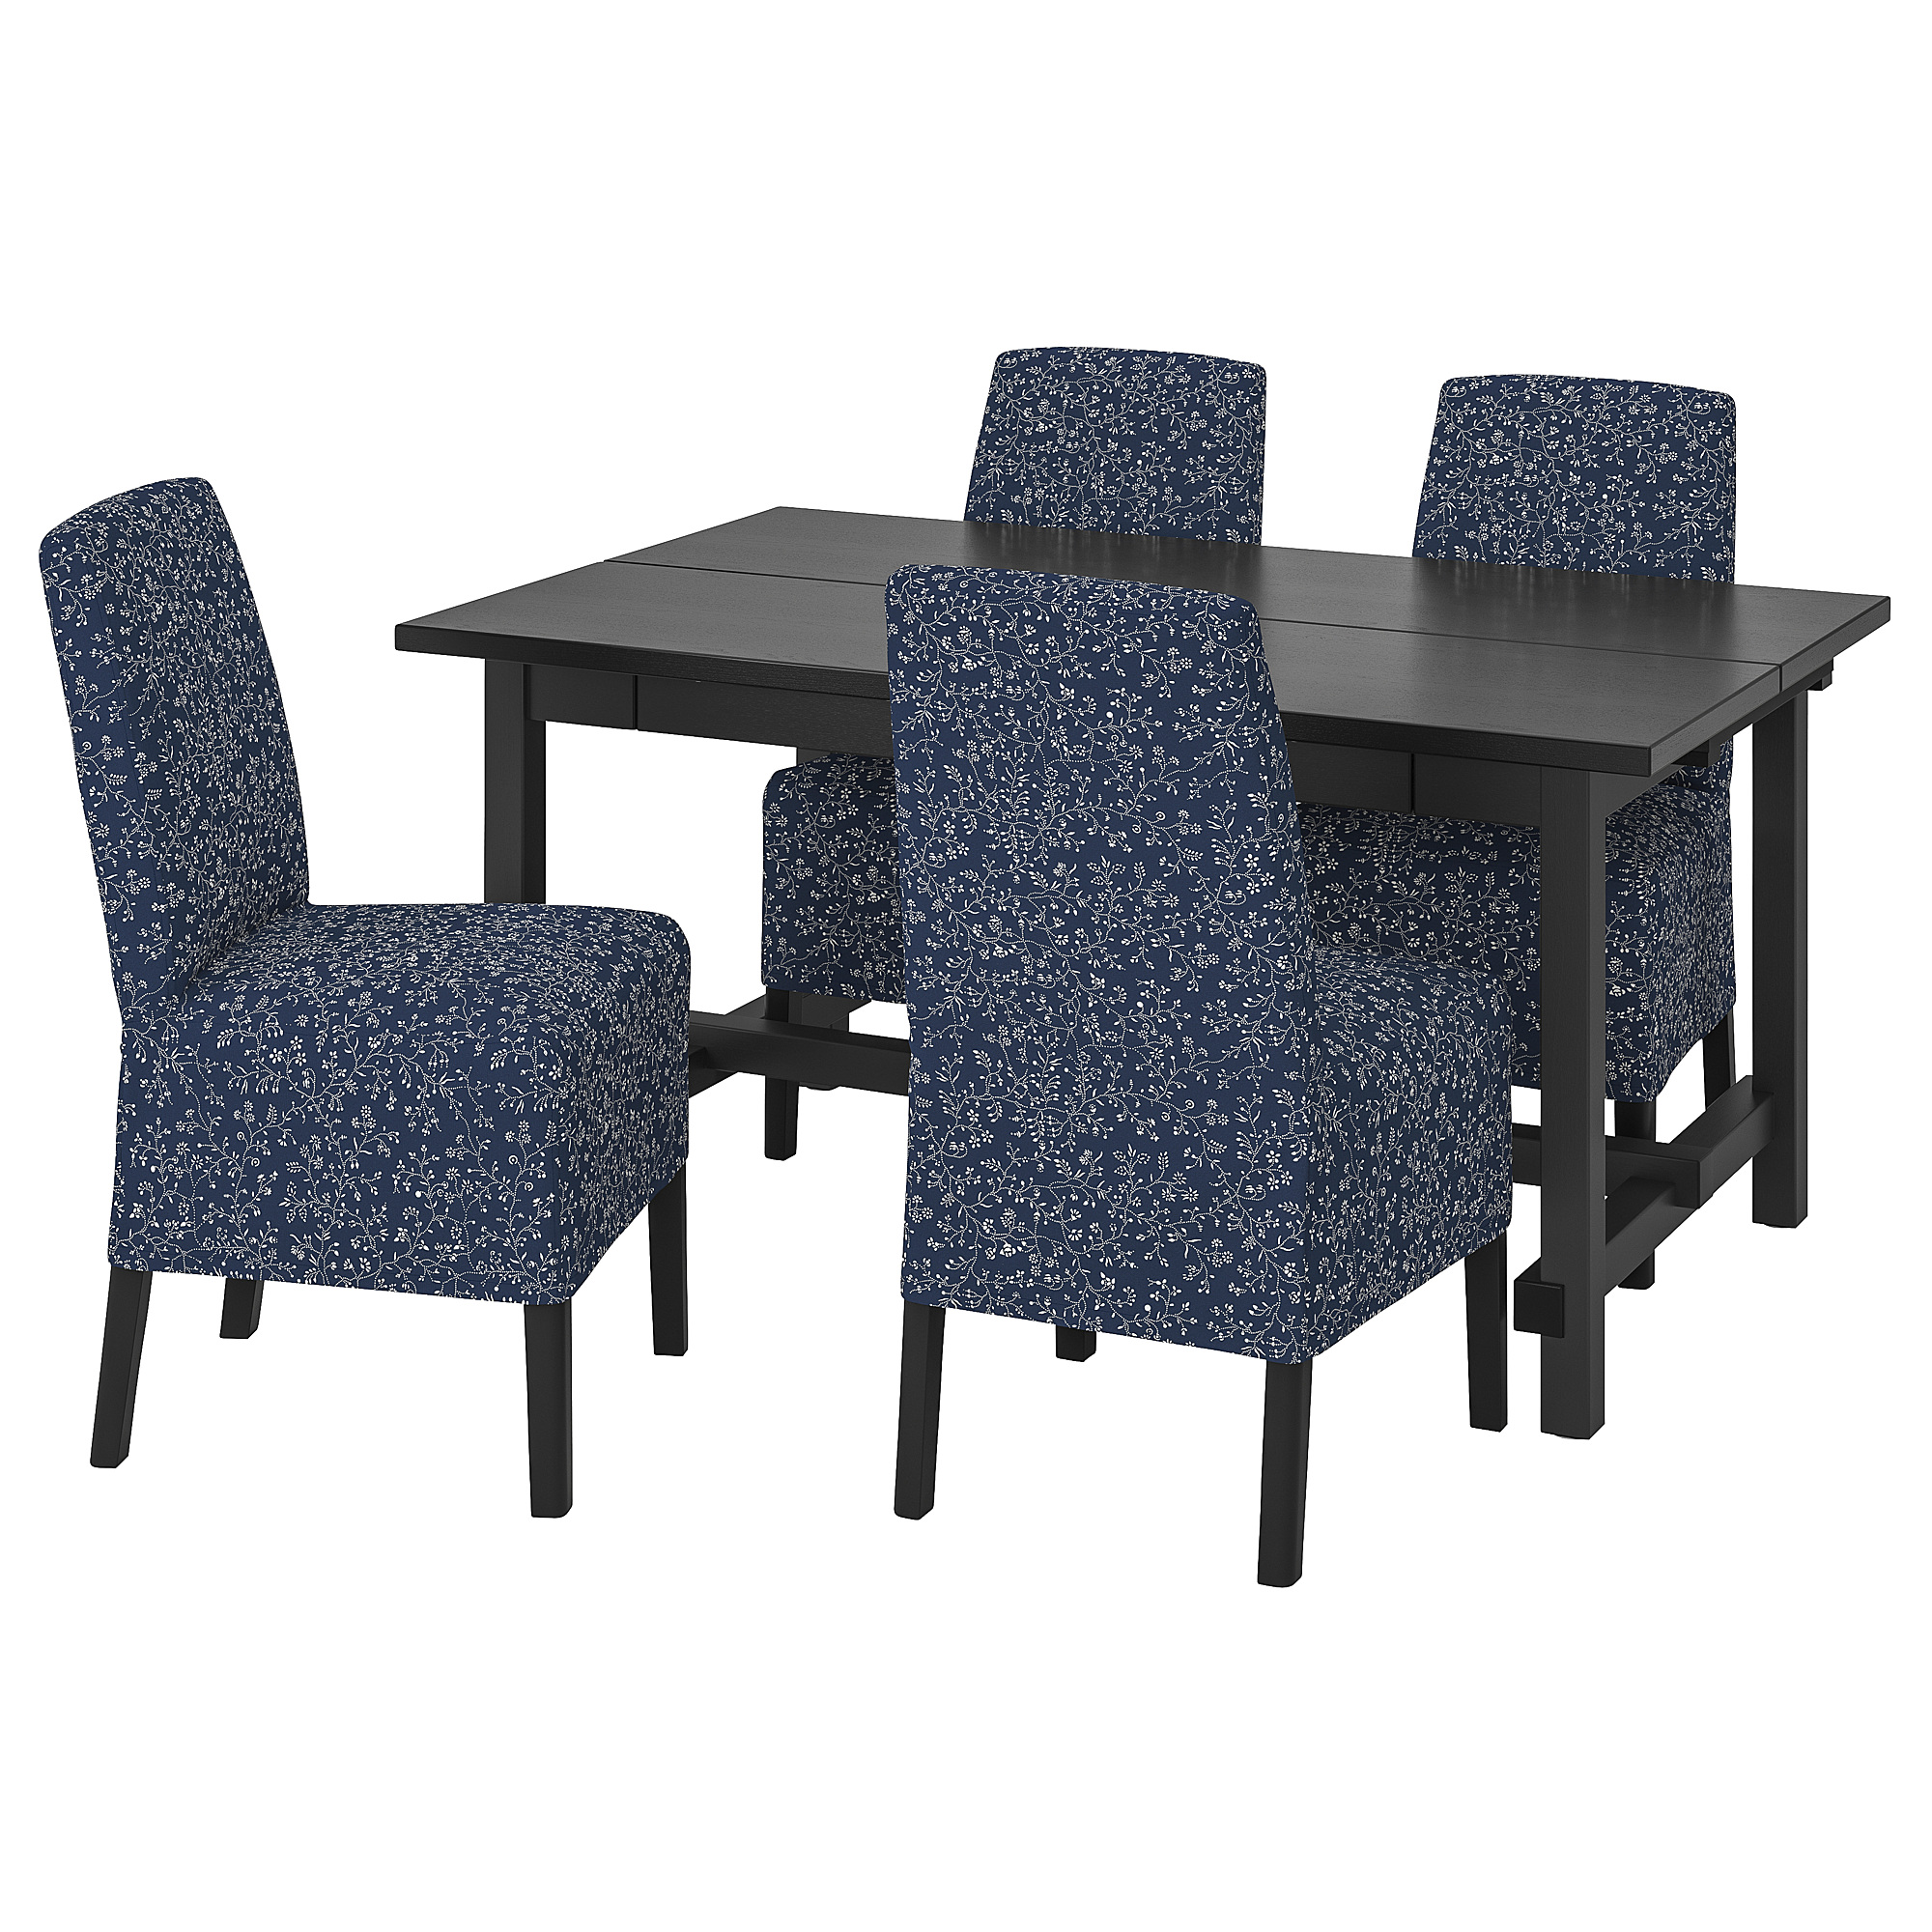 NORDVIKEN/BERGMUND table and 4 chairs